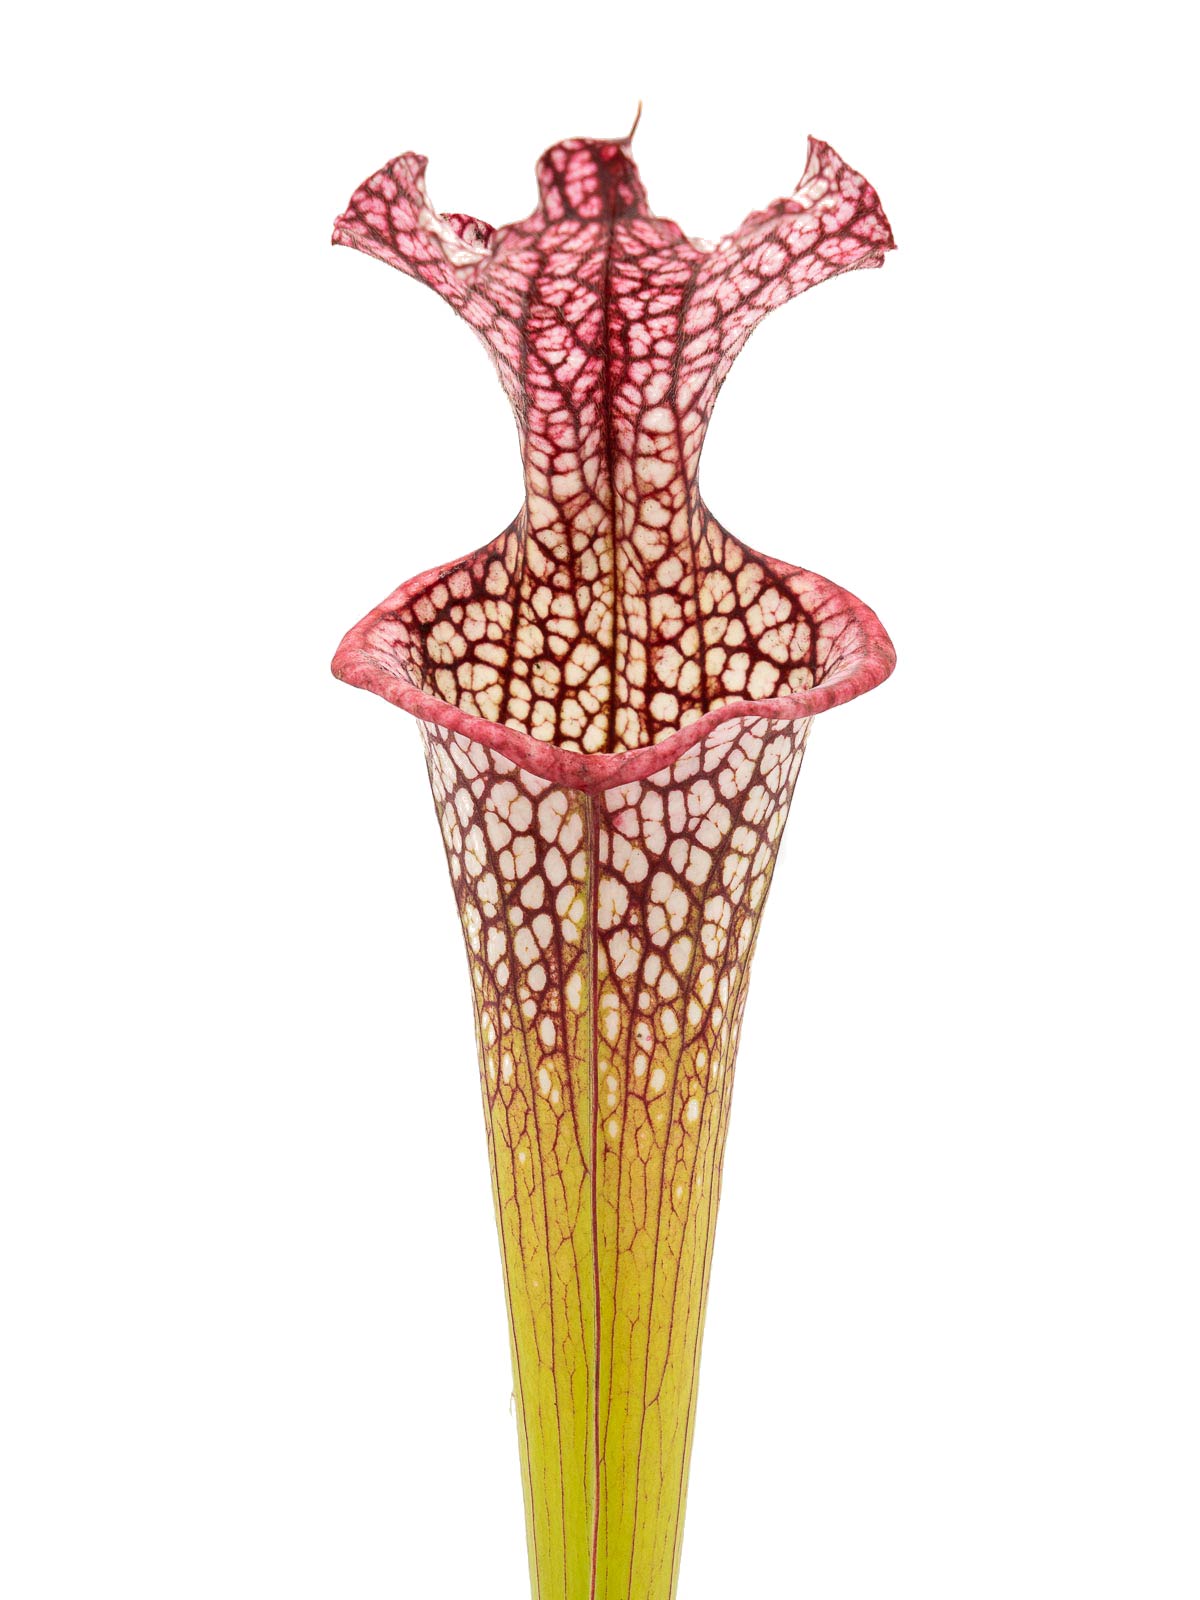 Sarracenia x moorei `Adrian Slack´ x leucophylla - MK H268